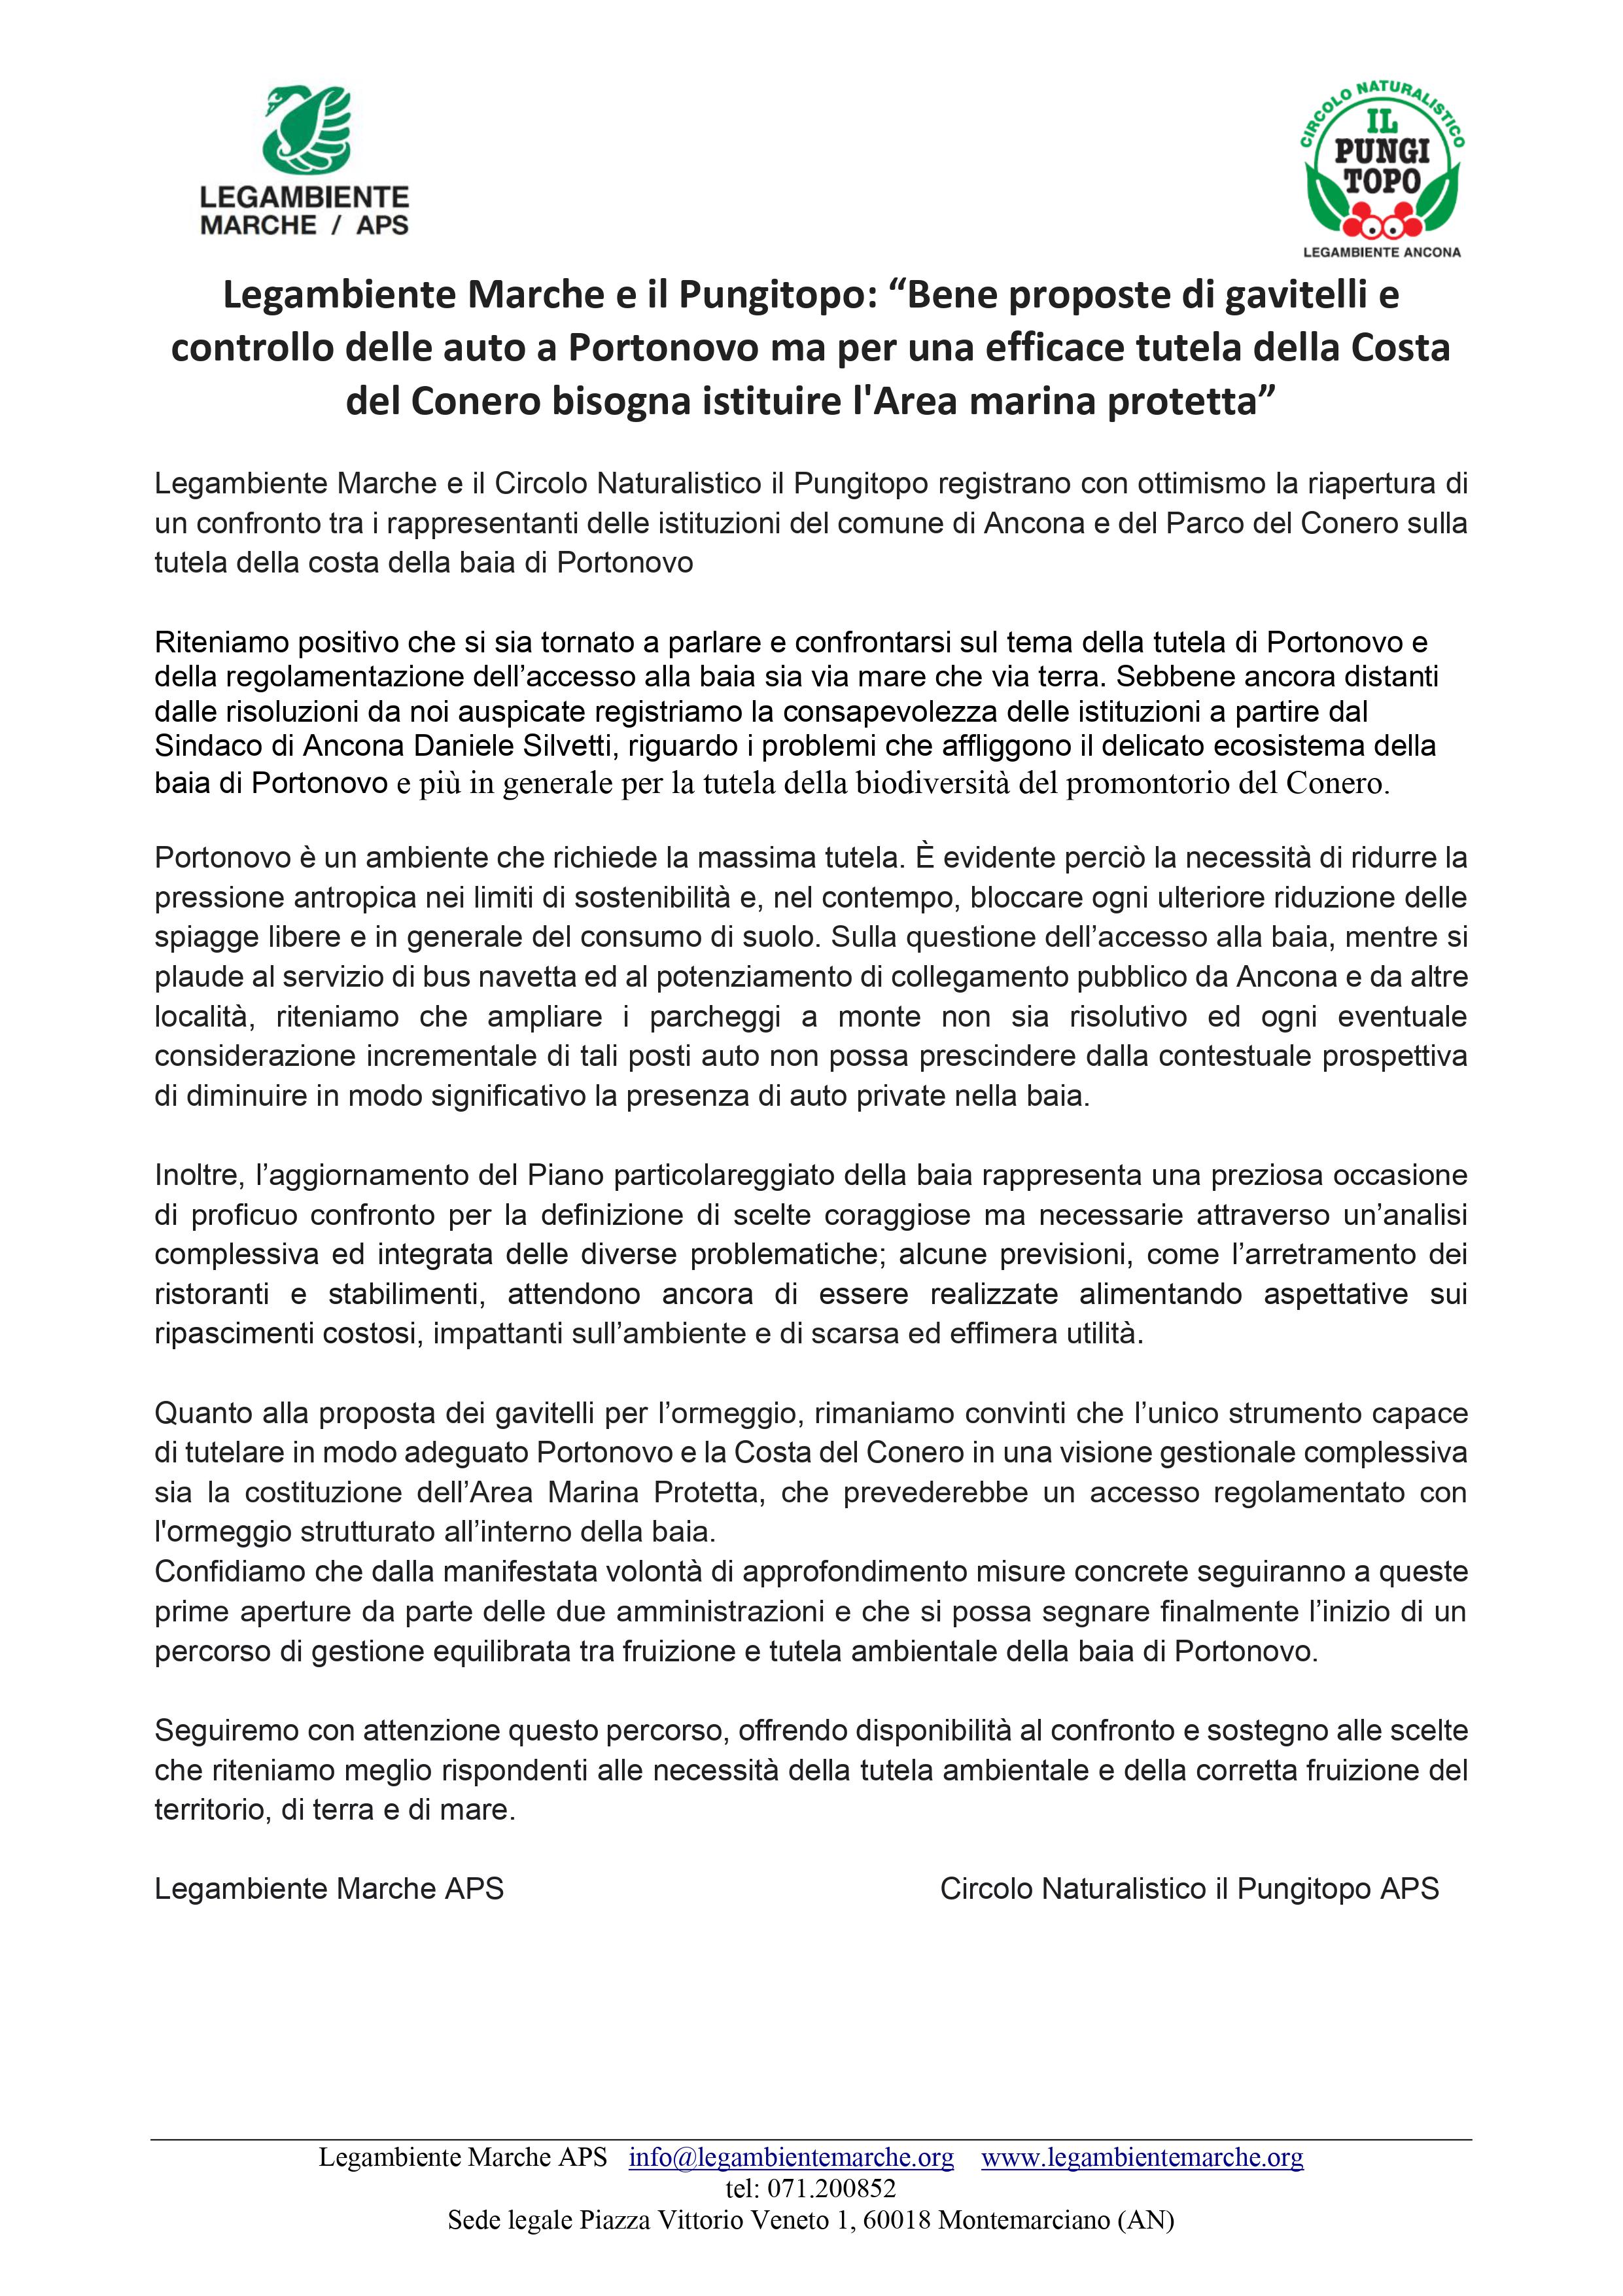 Comunicato Stampa Legambiente Marche e Pungitopo Portonovo 0707